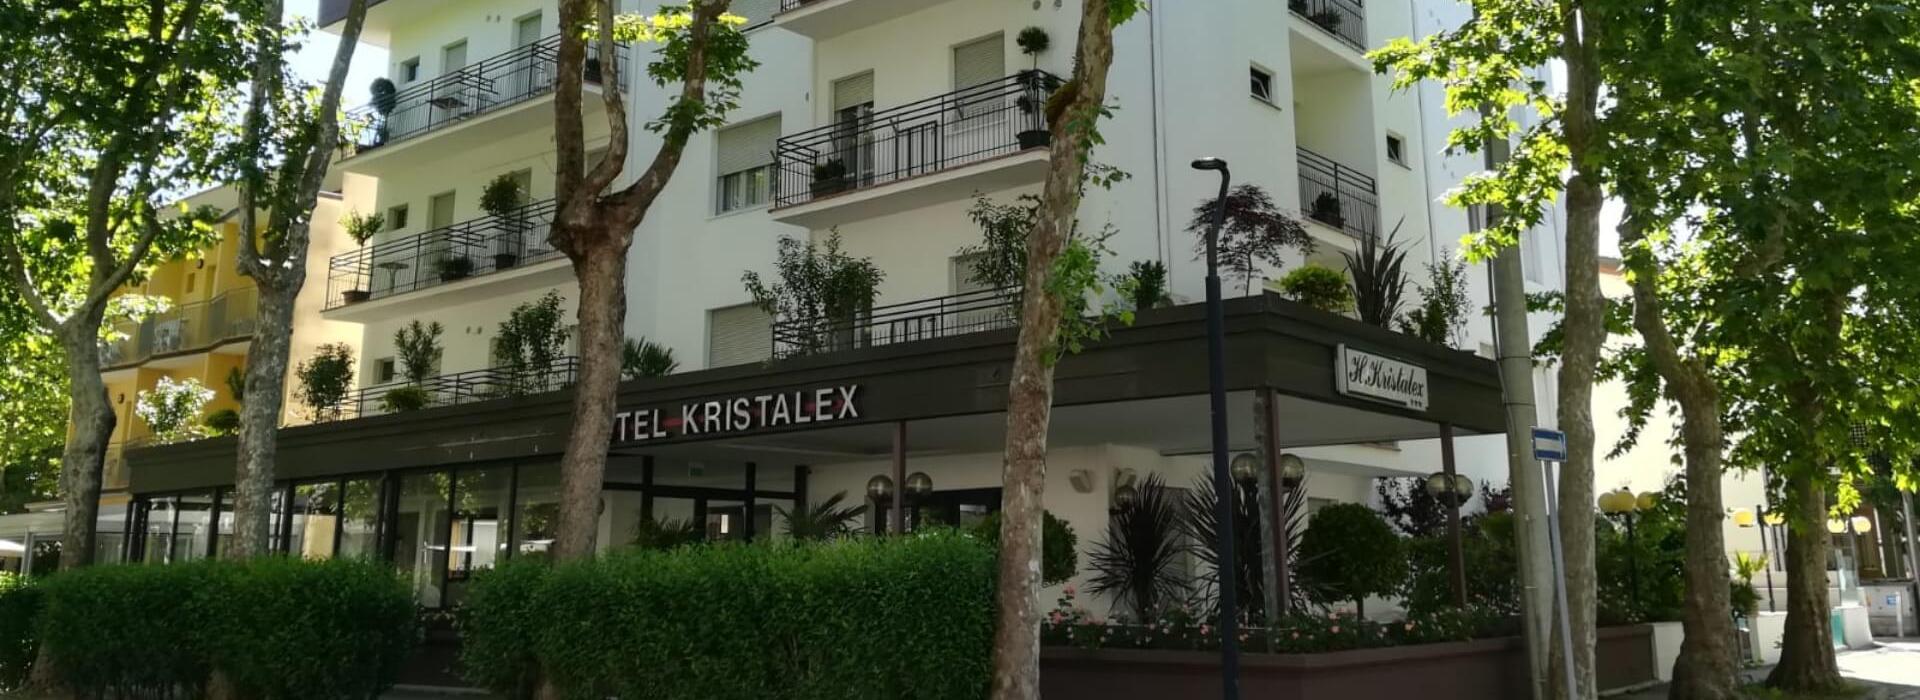 hotelkristalex en end-of-may-offer-in-cesenatico-pet-friendly-hotel 017